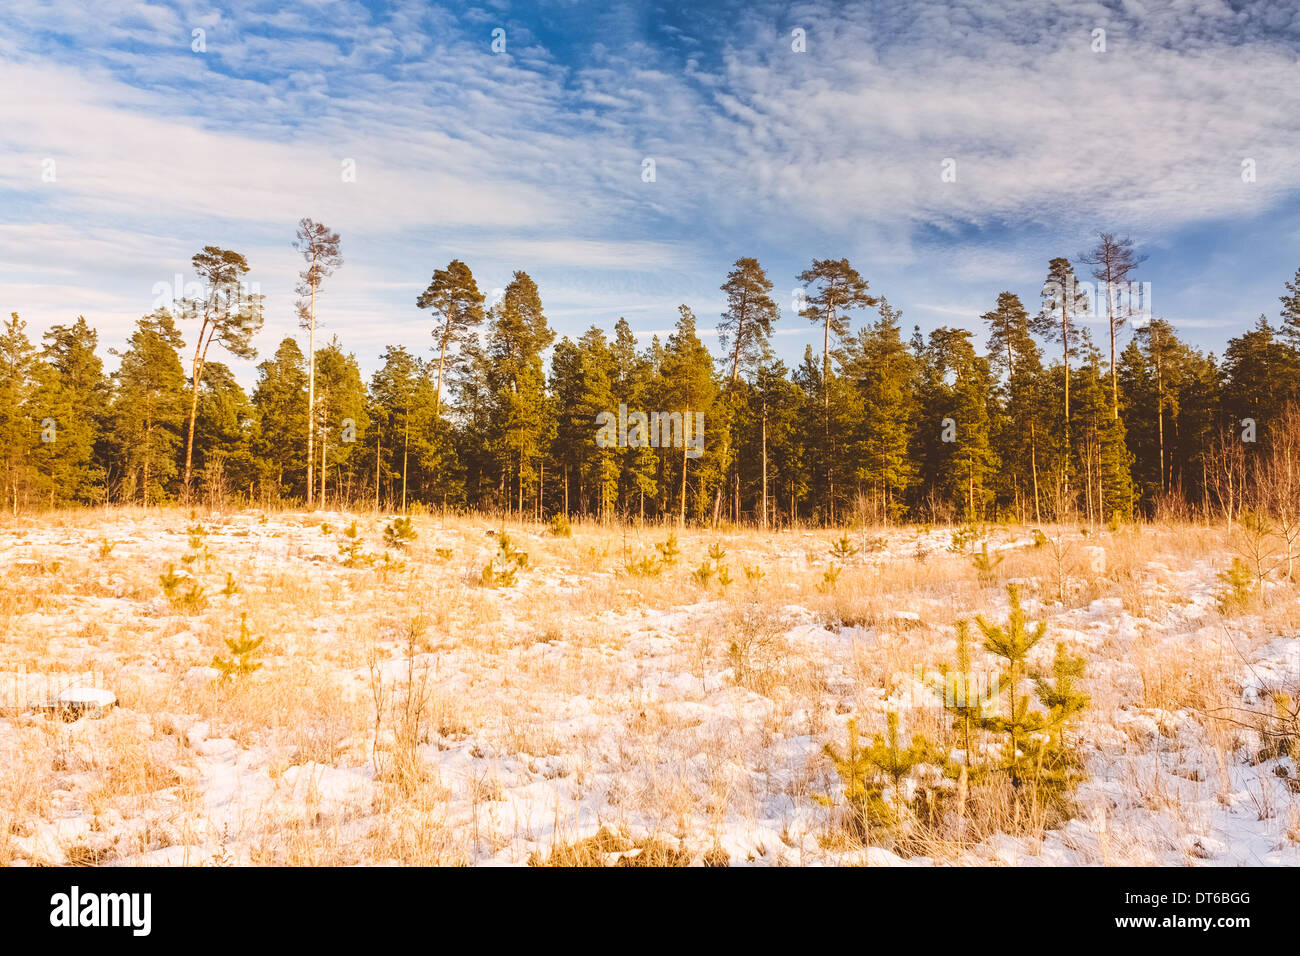 Erster Schnee bedeckt die gelbe Trockenrasen im Wald. Russische Natur. Stockfoto